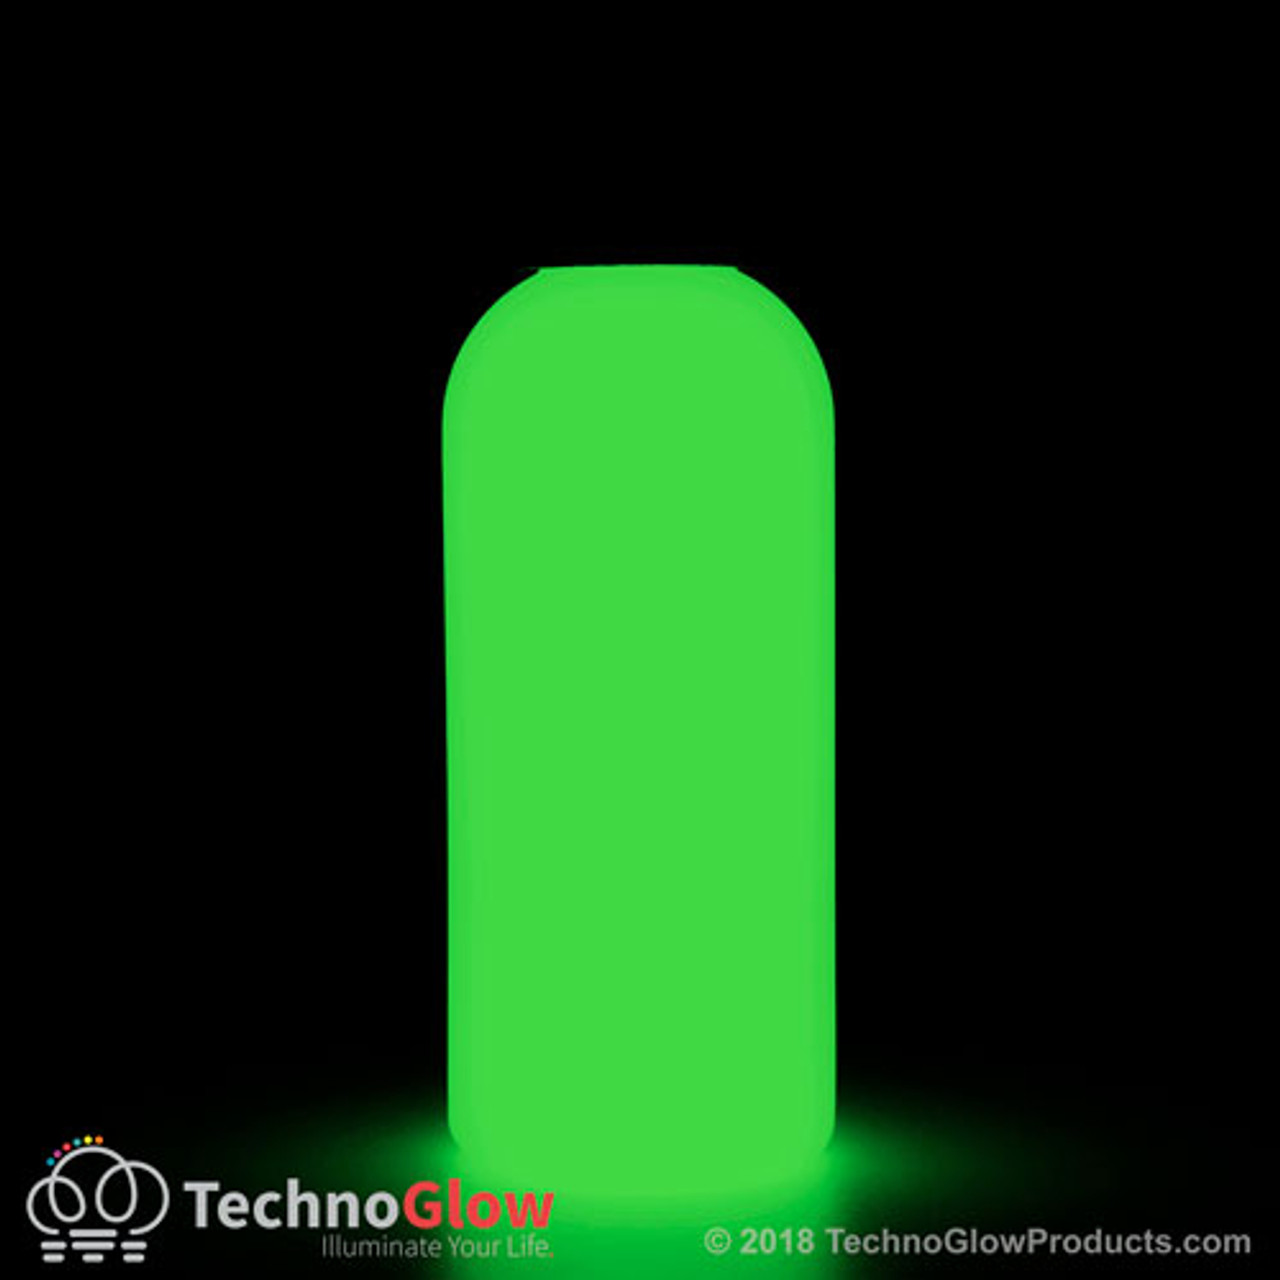 https://cdn11.bigcommerce.com/s-6da6f/images/stencil/1280x1280/products/180/1666/green-photoluminescent-paint-fluorescent__03427.1533255720.jpg?c=2?imbypass=on